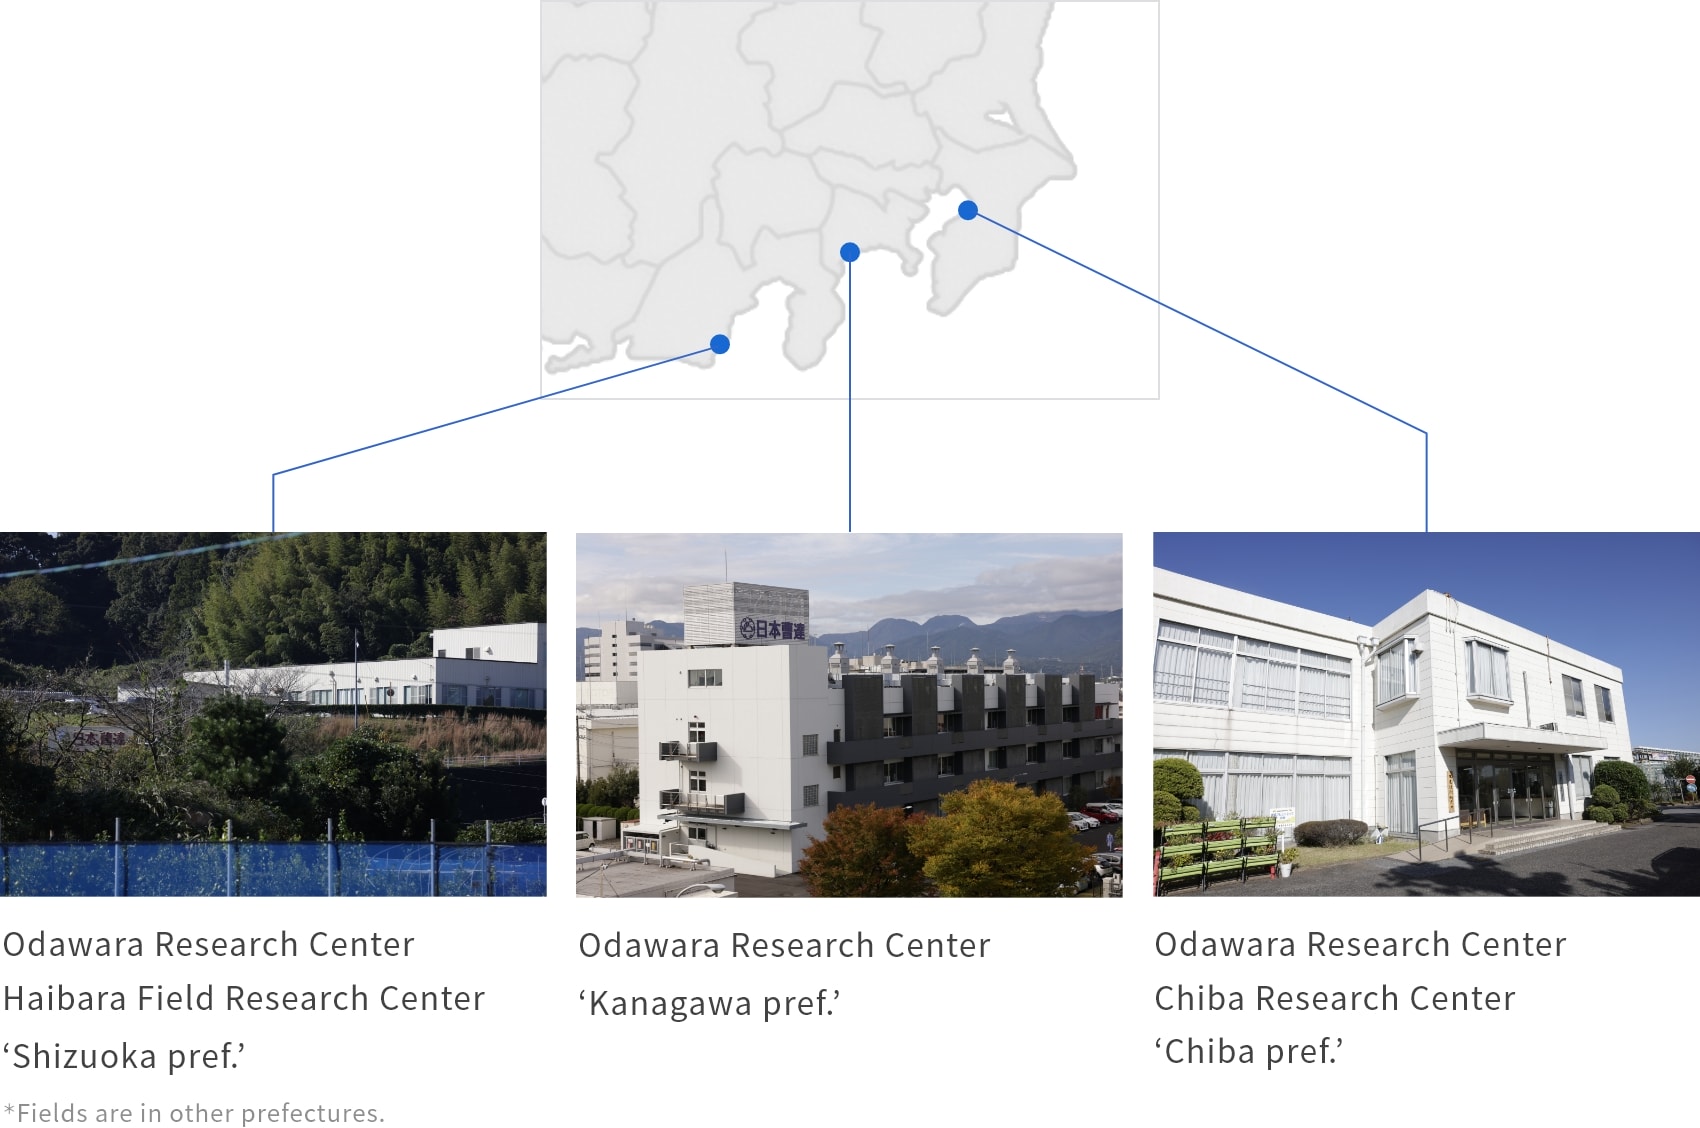 Odawara Research Center